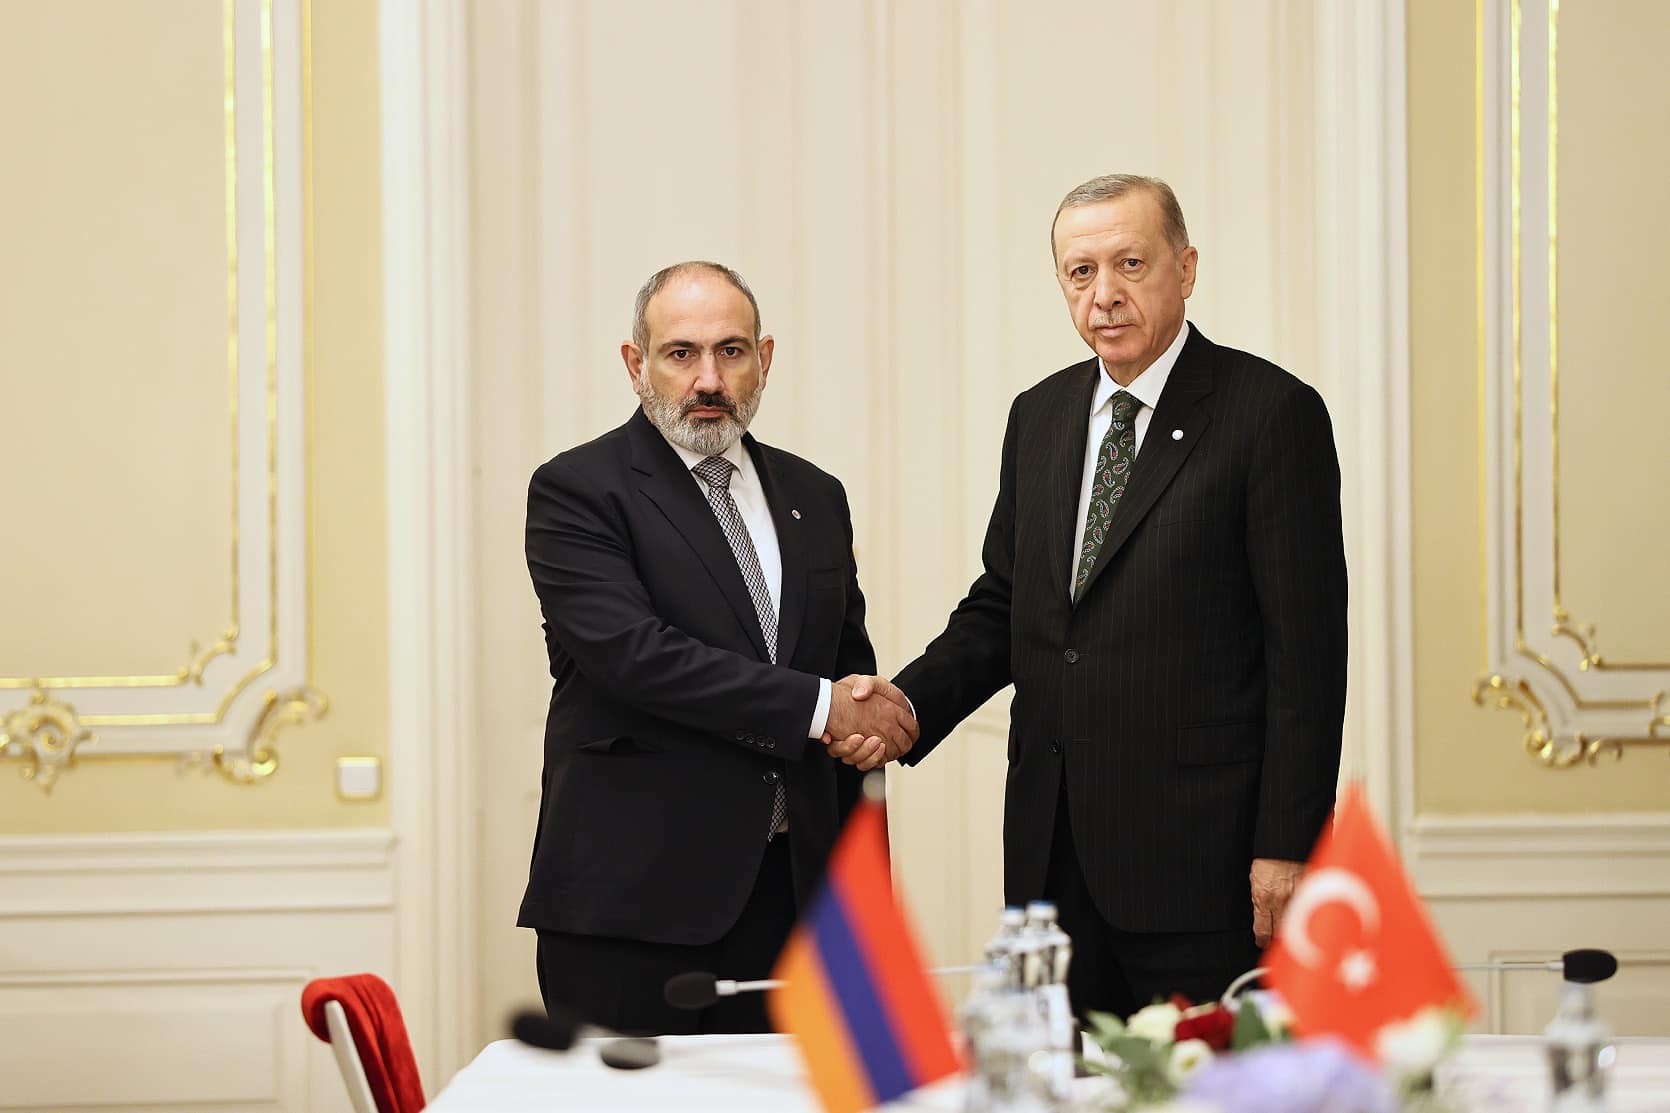 Pashinyan-Erdogan first meeting